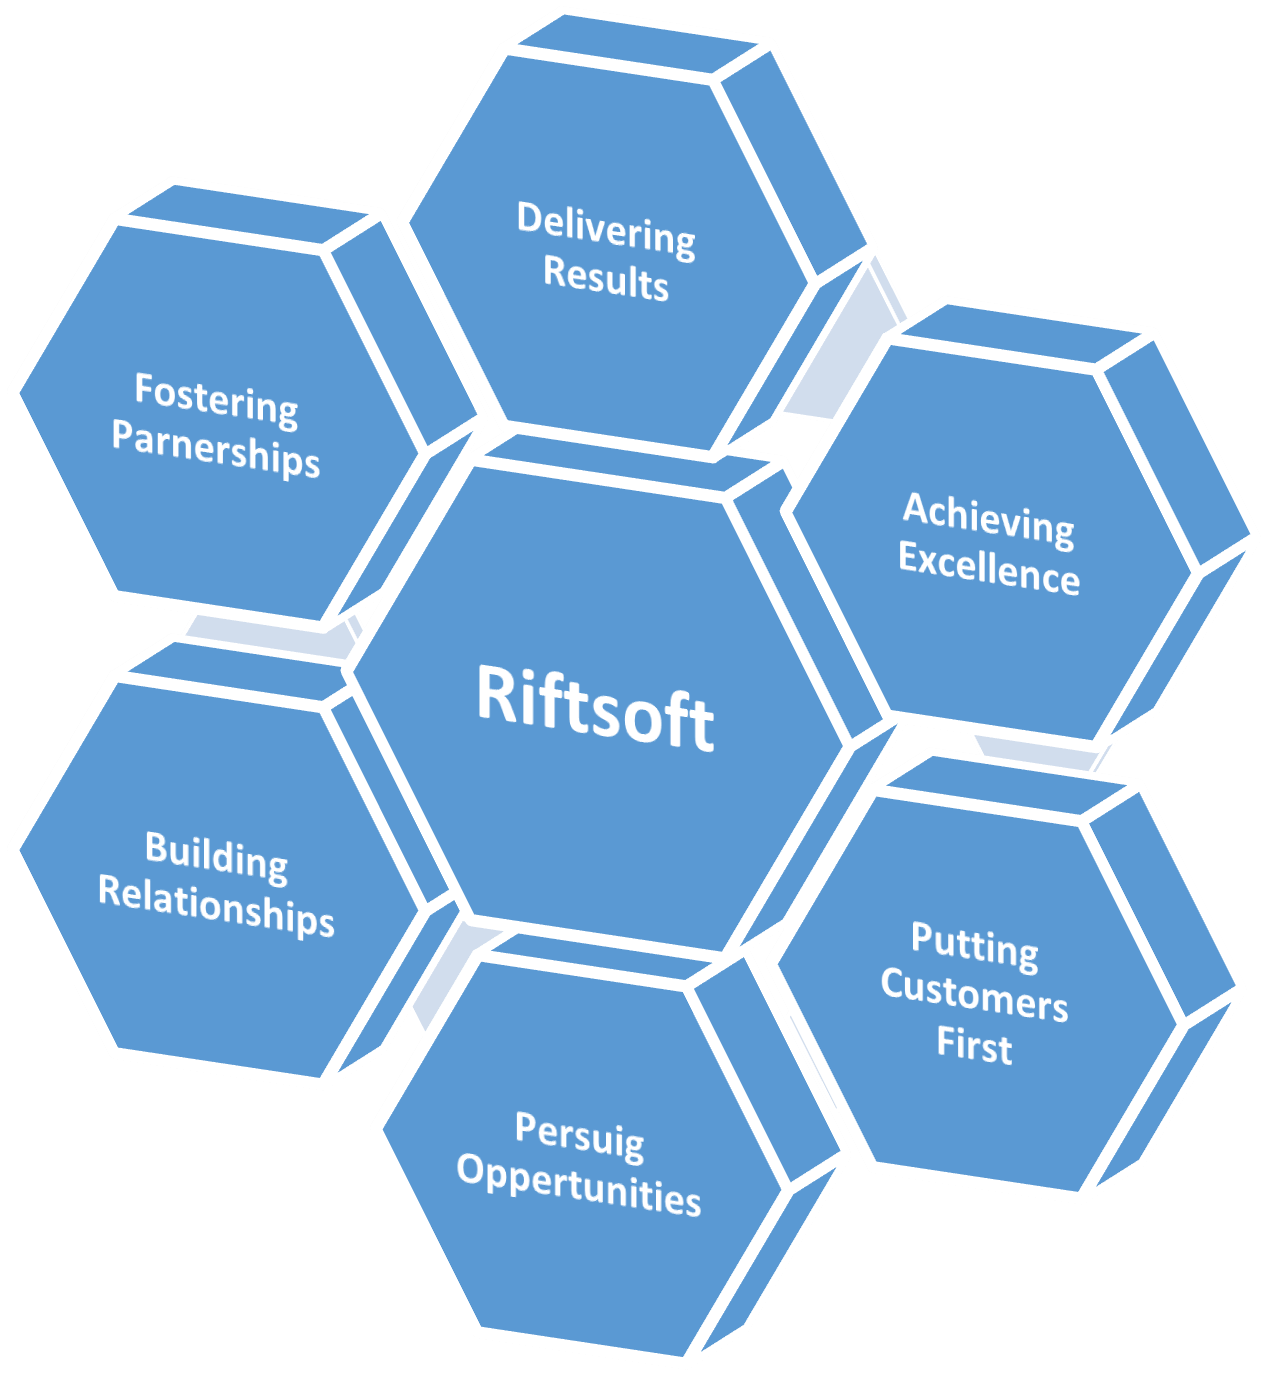 Riftsoft products